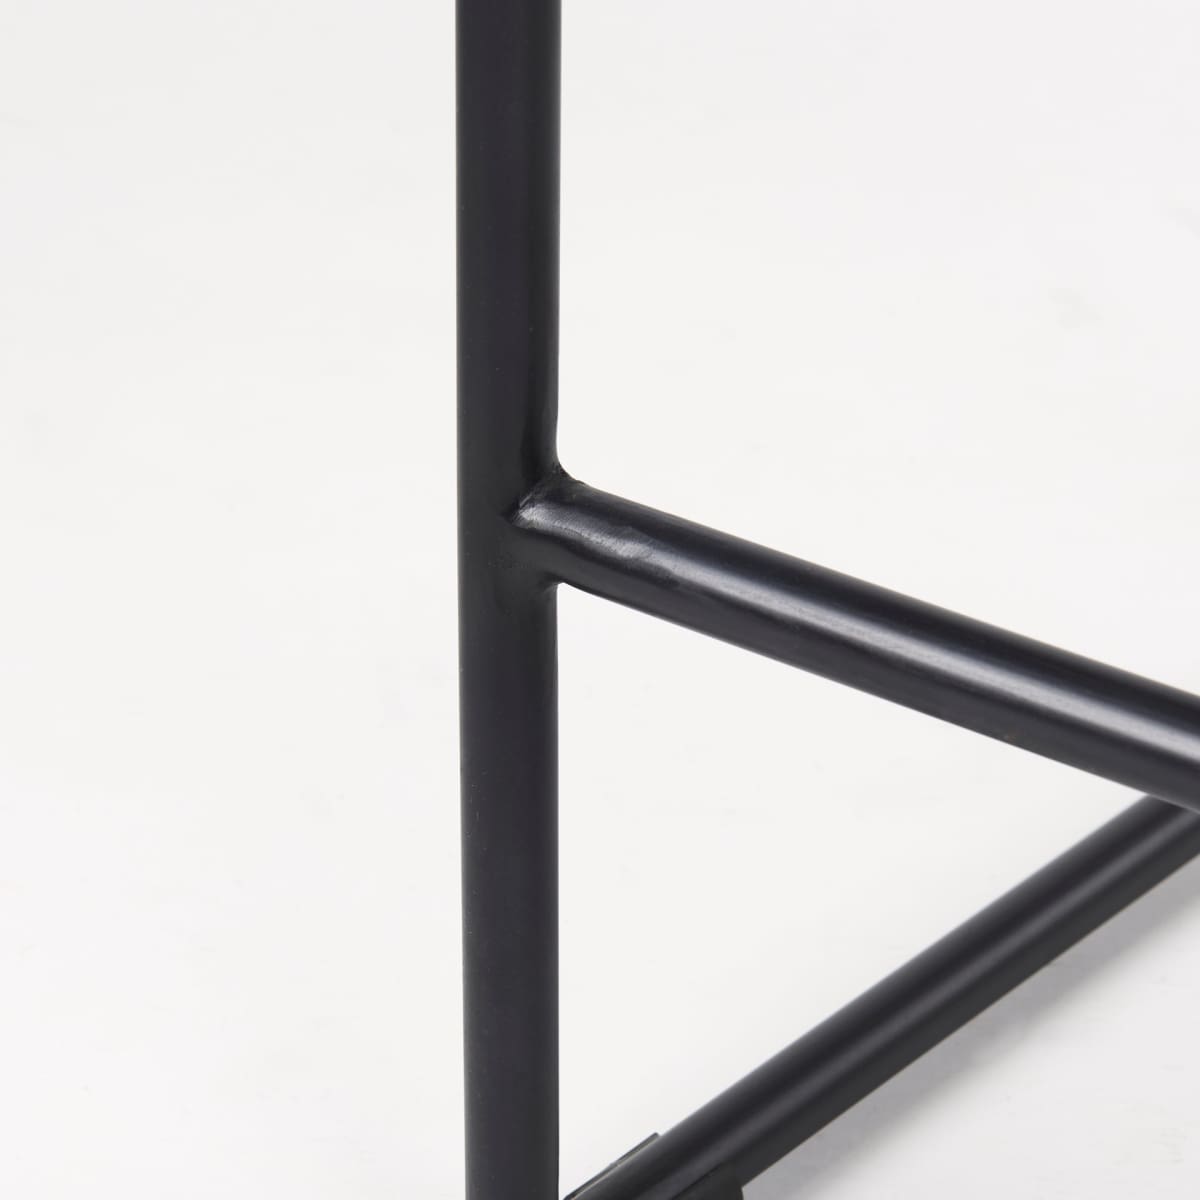 Givens Bar Counter Stool Natural Wood | Black Metal | Counter - bar-stools